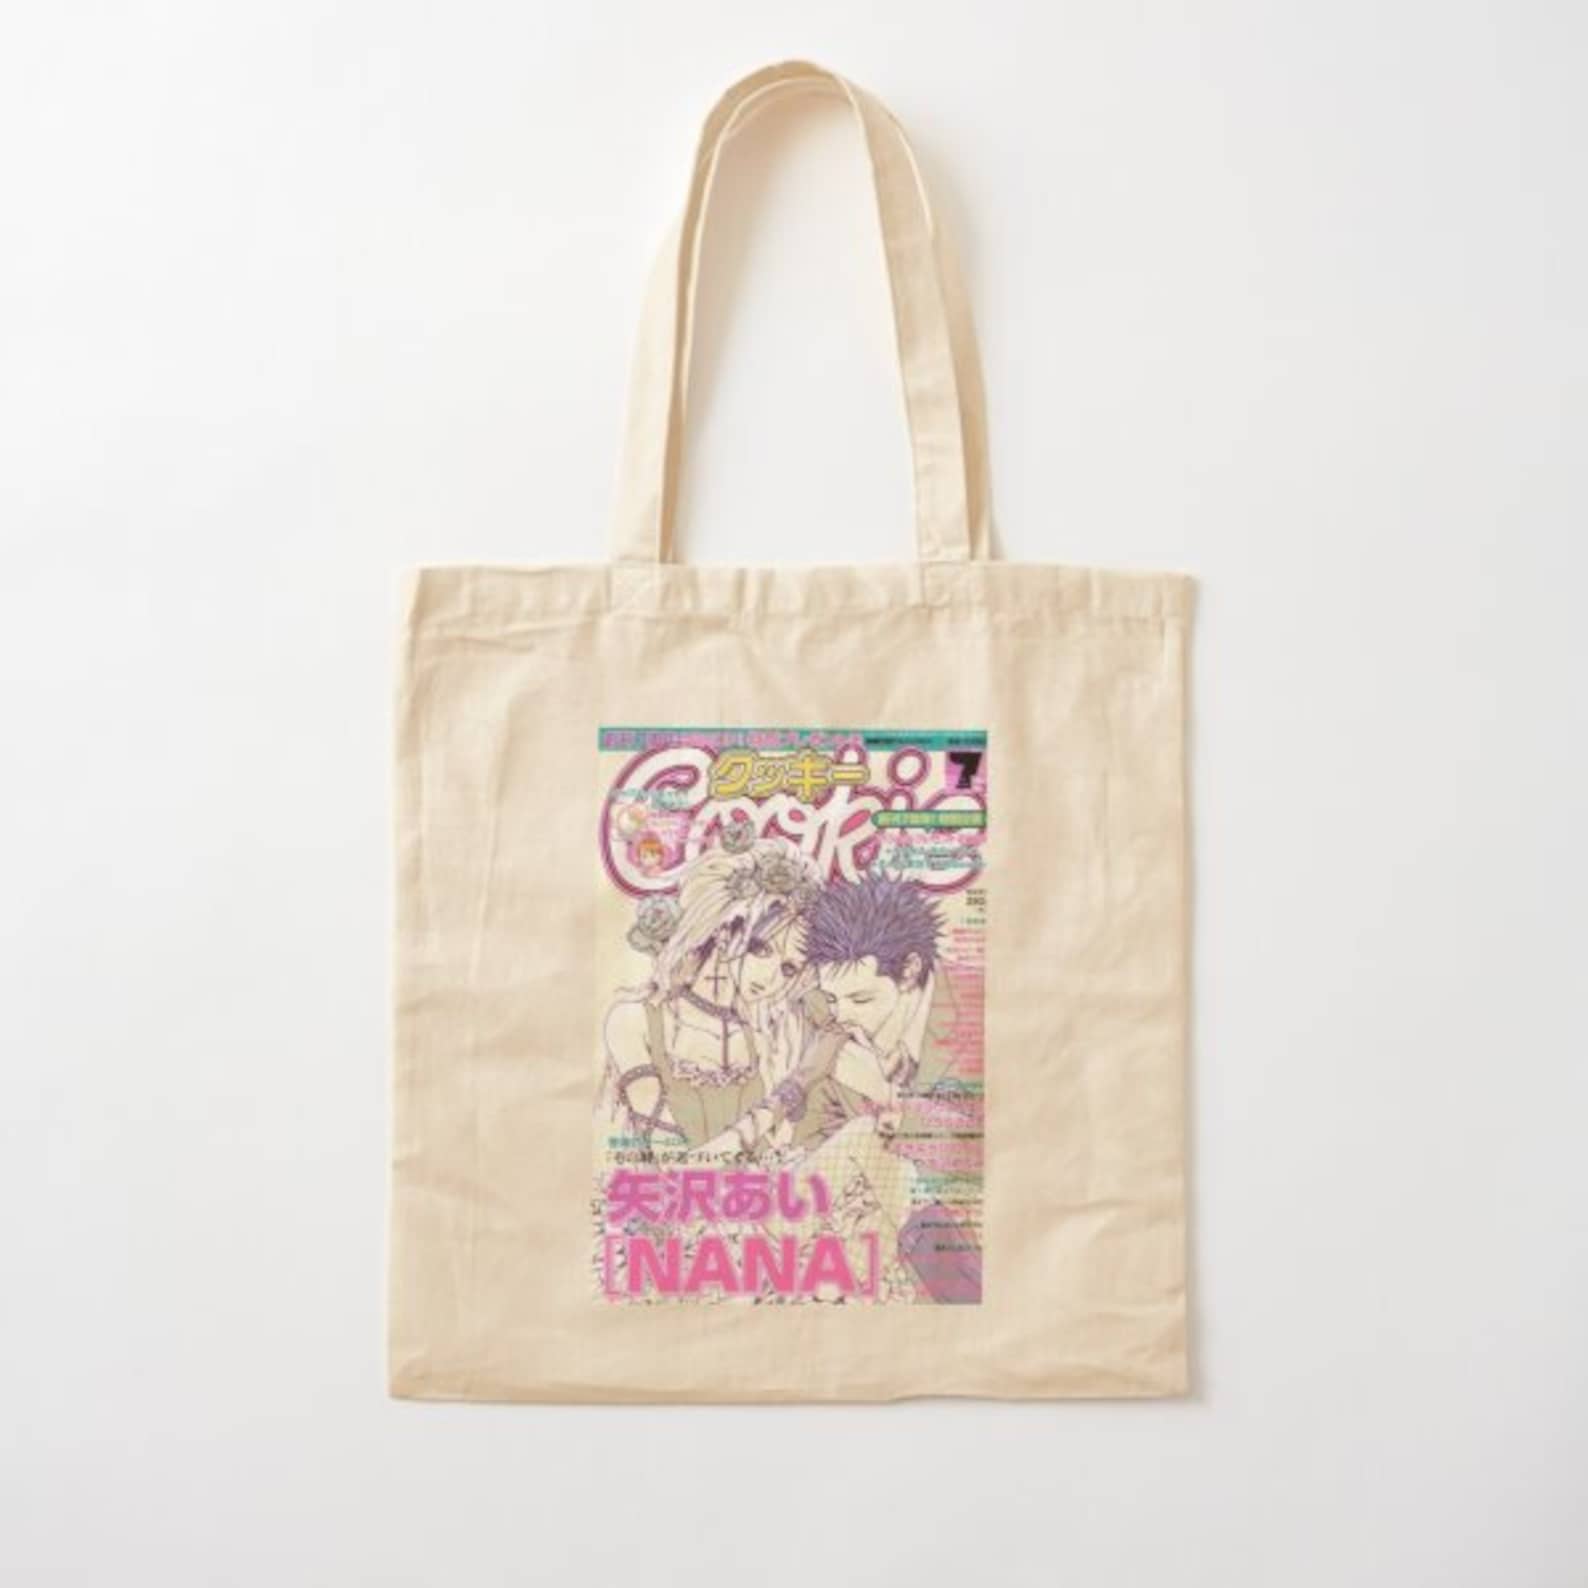 Nana Anime Cotton Tote Bag 15x15in. | Etsy